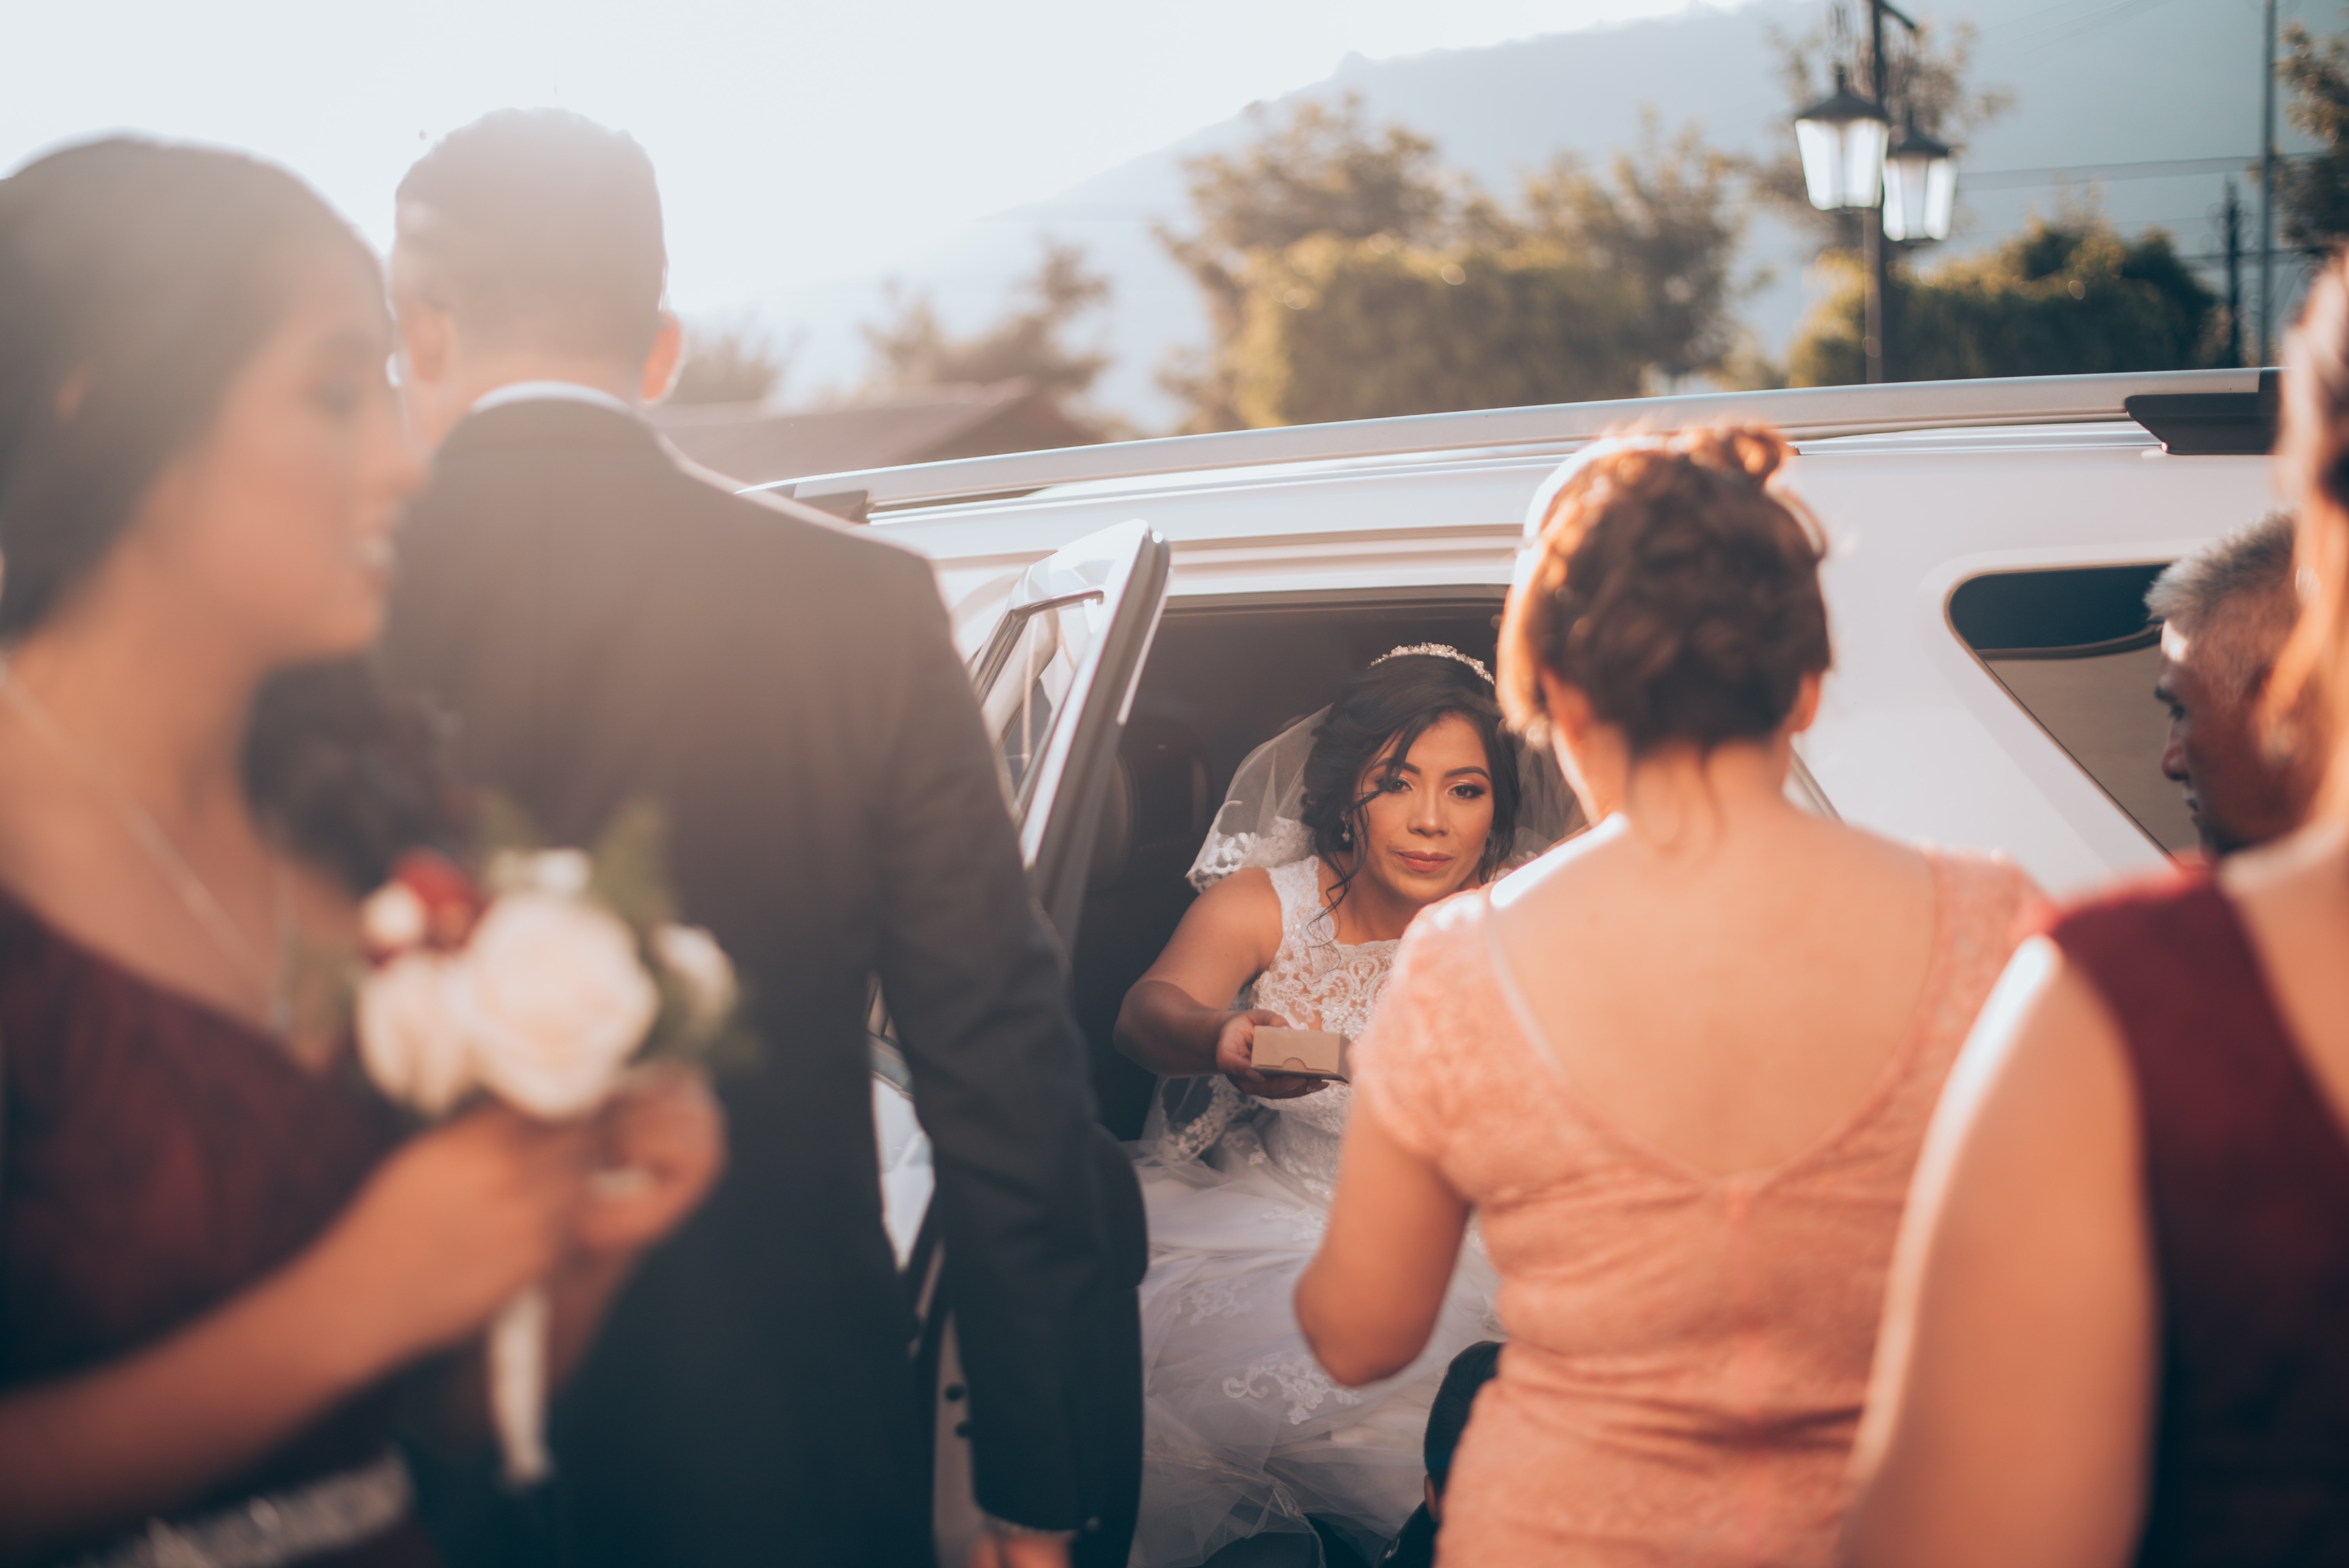 réaliser un mariage minimaliste, la nouvelle tendance du micro wedding 